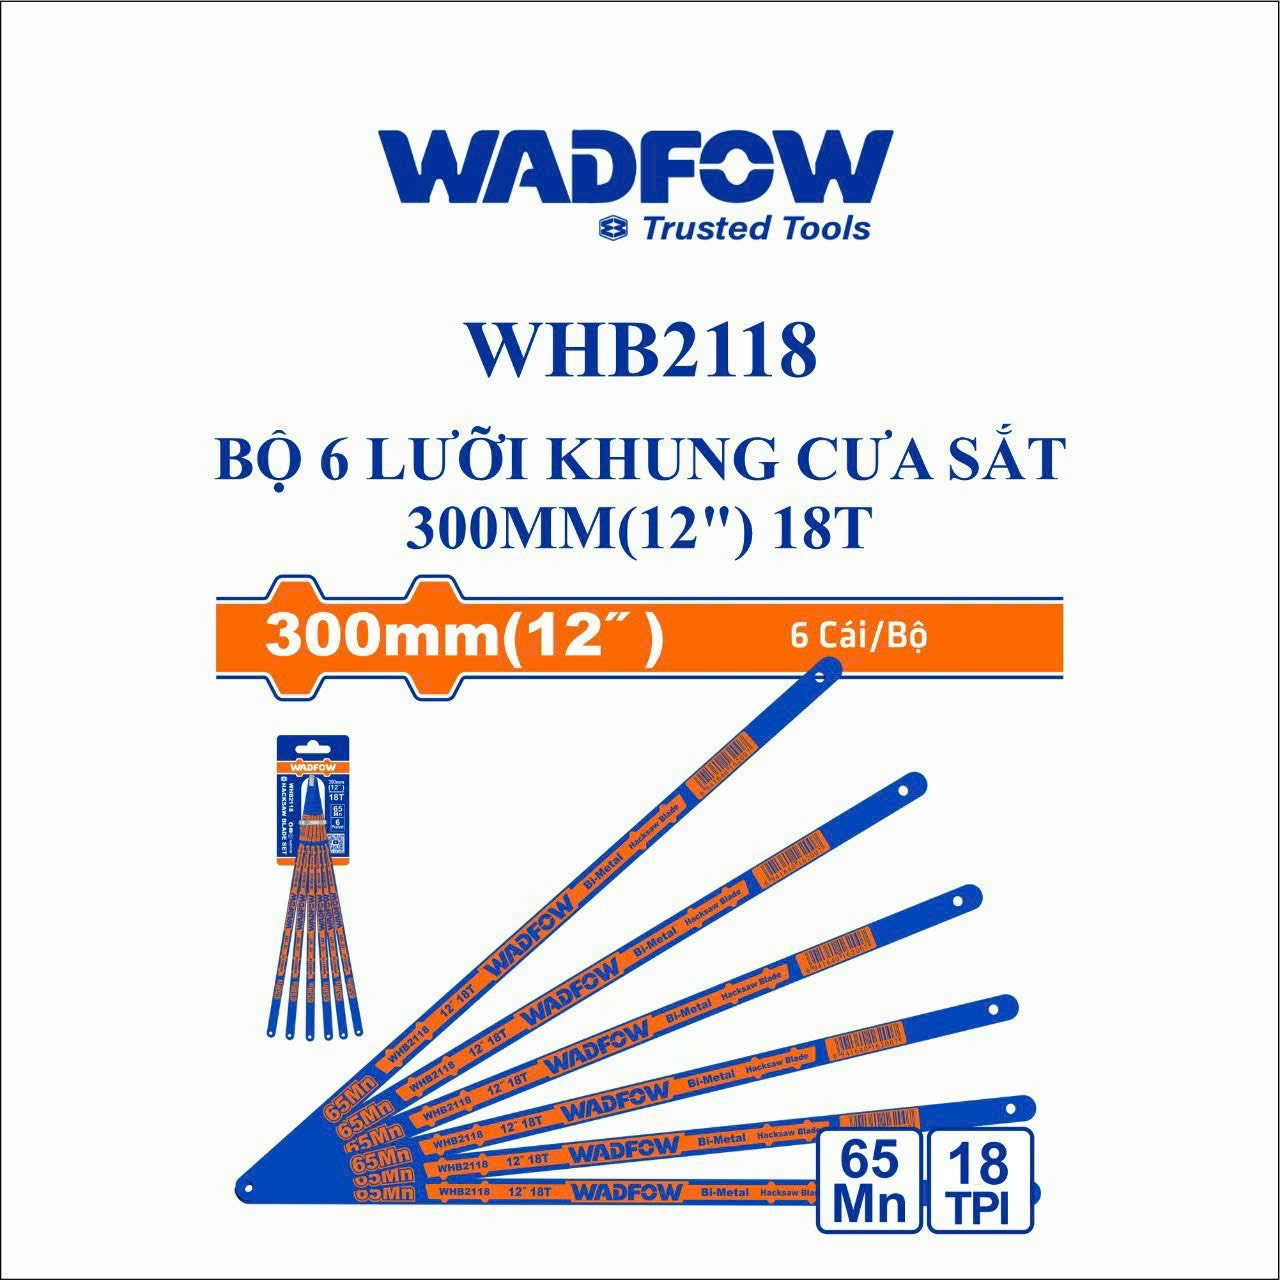 Hình ảnh 2 của mặt hàng Bộ 6 lưỡi khung cưa sắt 300mm(12") 18T wadfow WHB2118